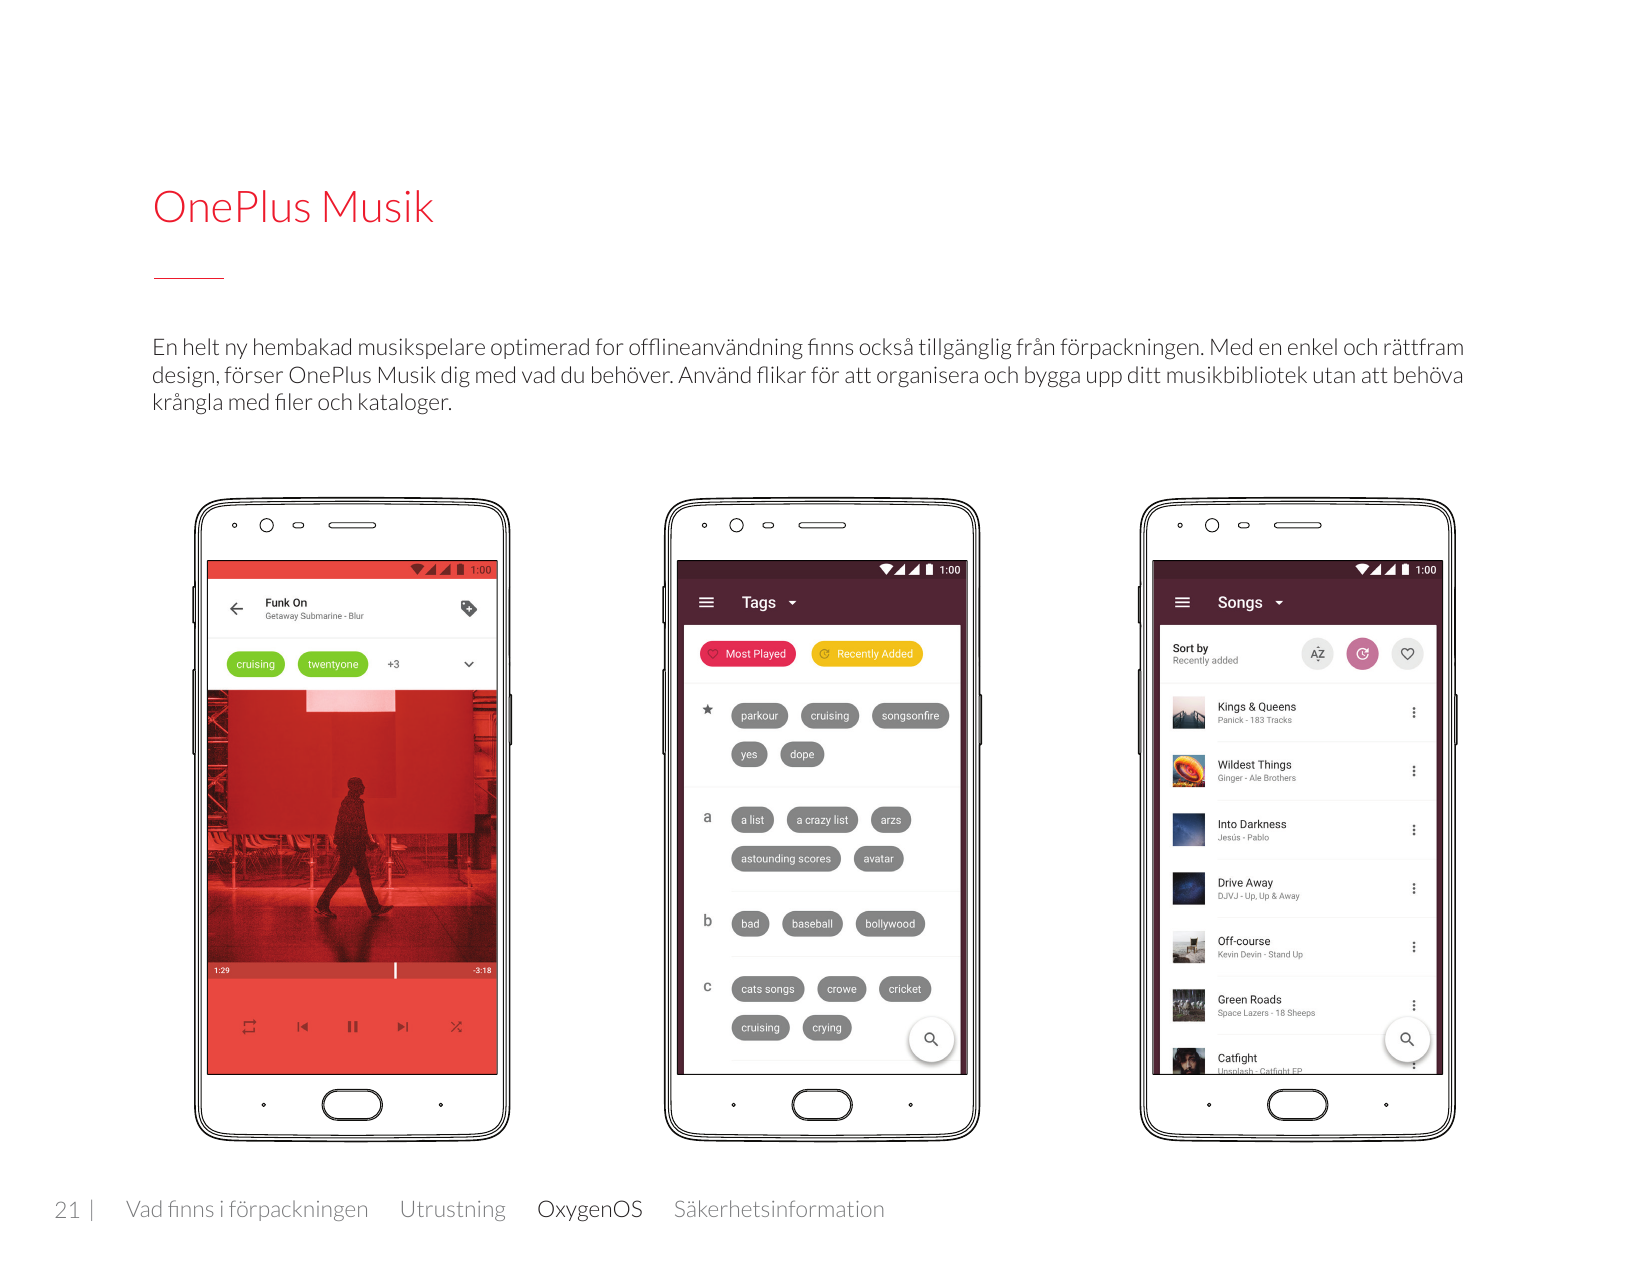 OnePlus MusikEn helt ny hembakad musikspelare optimerad for offlineanvändning finns också tillgänglig från förpackningen. Med en